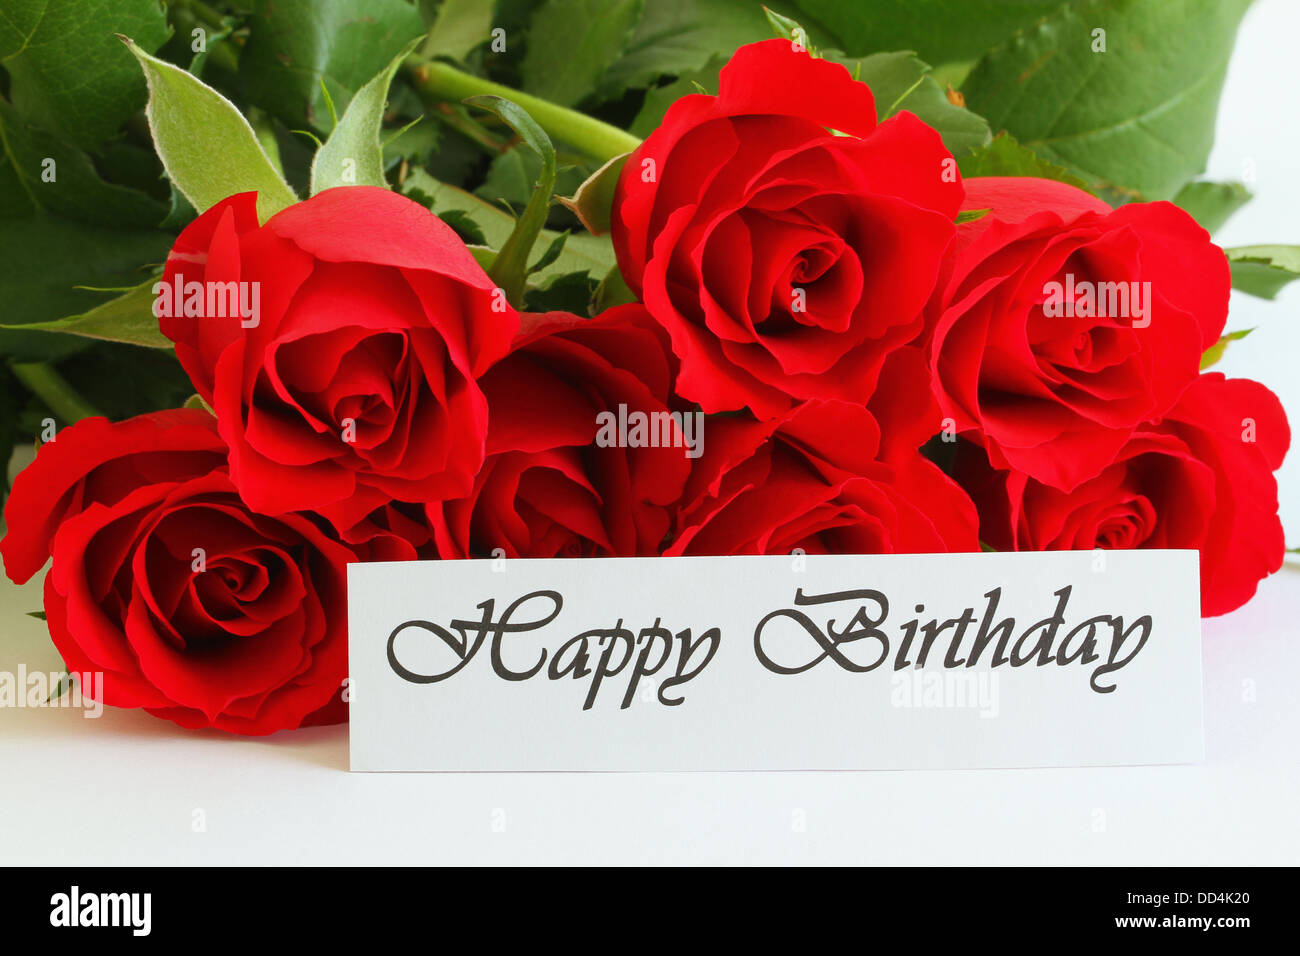 Joyeux anniversaire carte avec roses rouges Banque D'Images